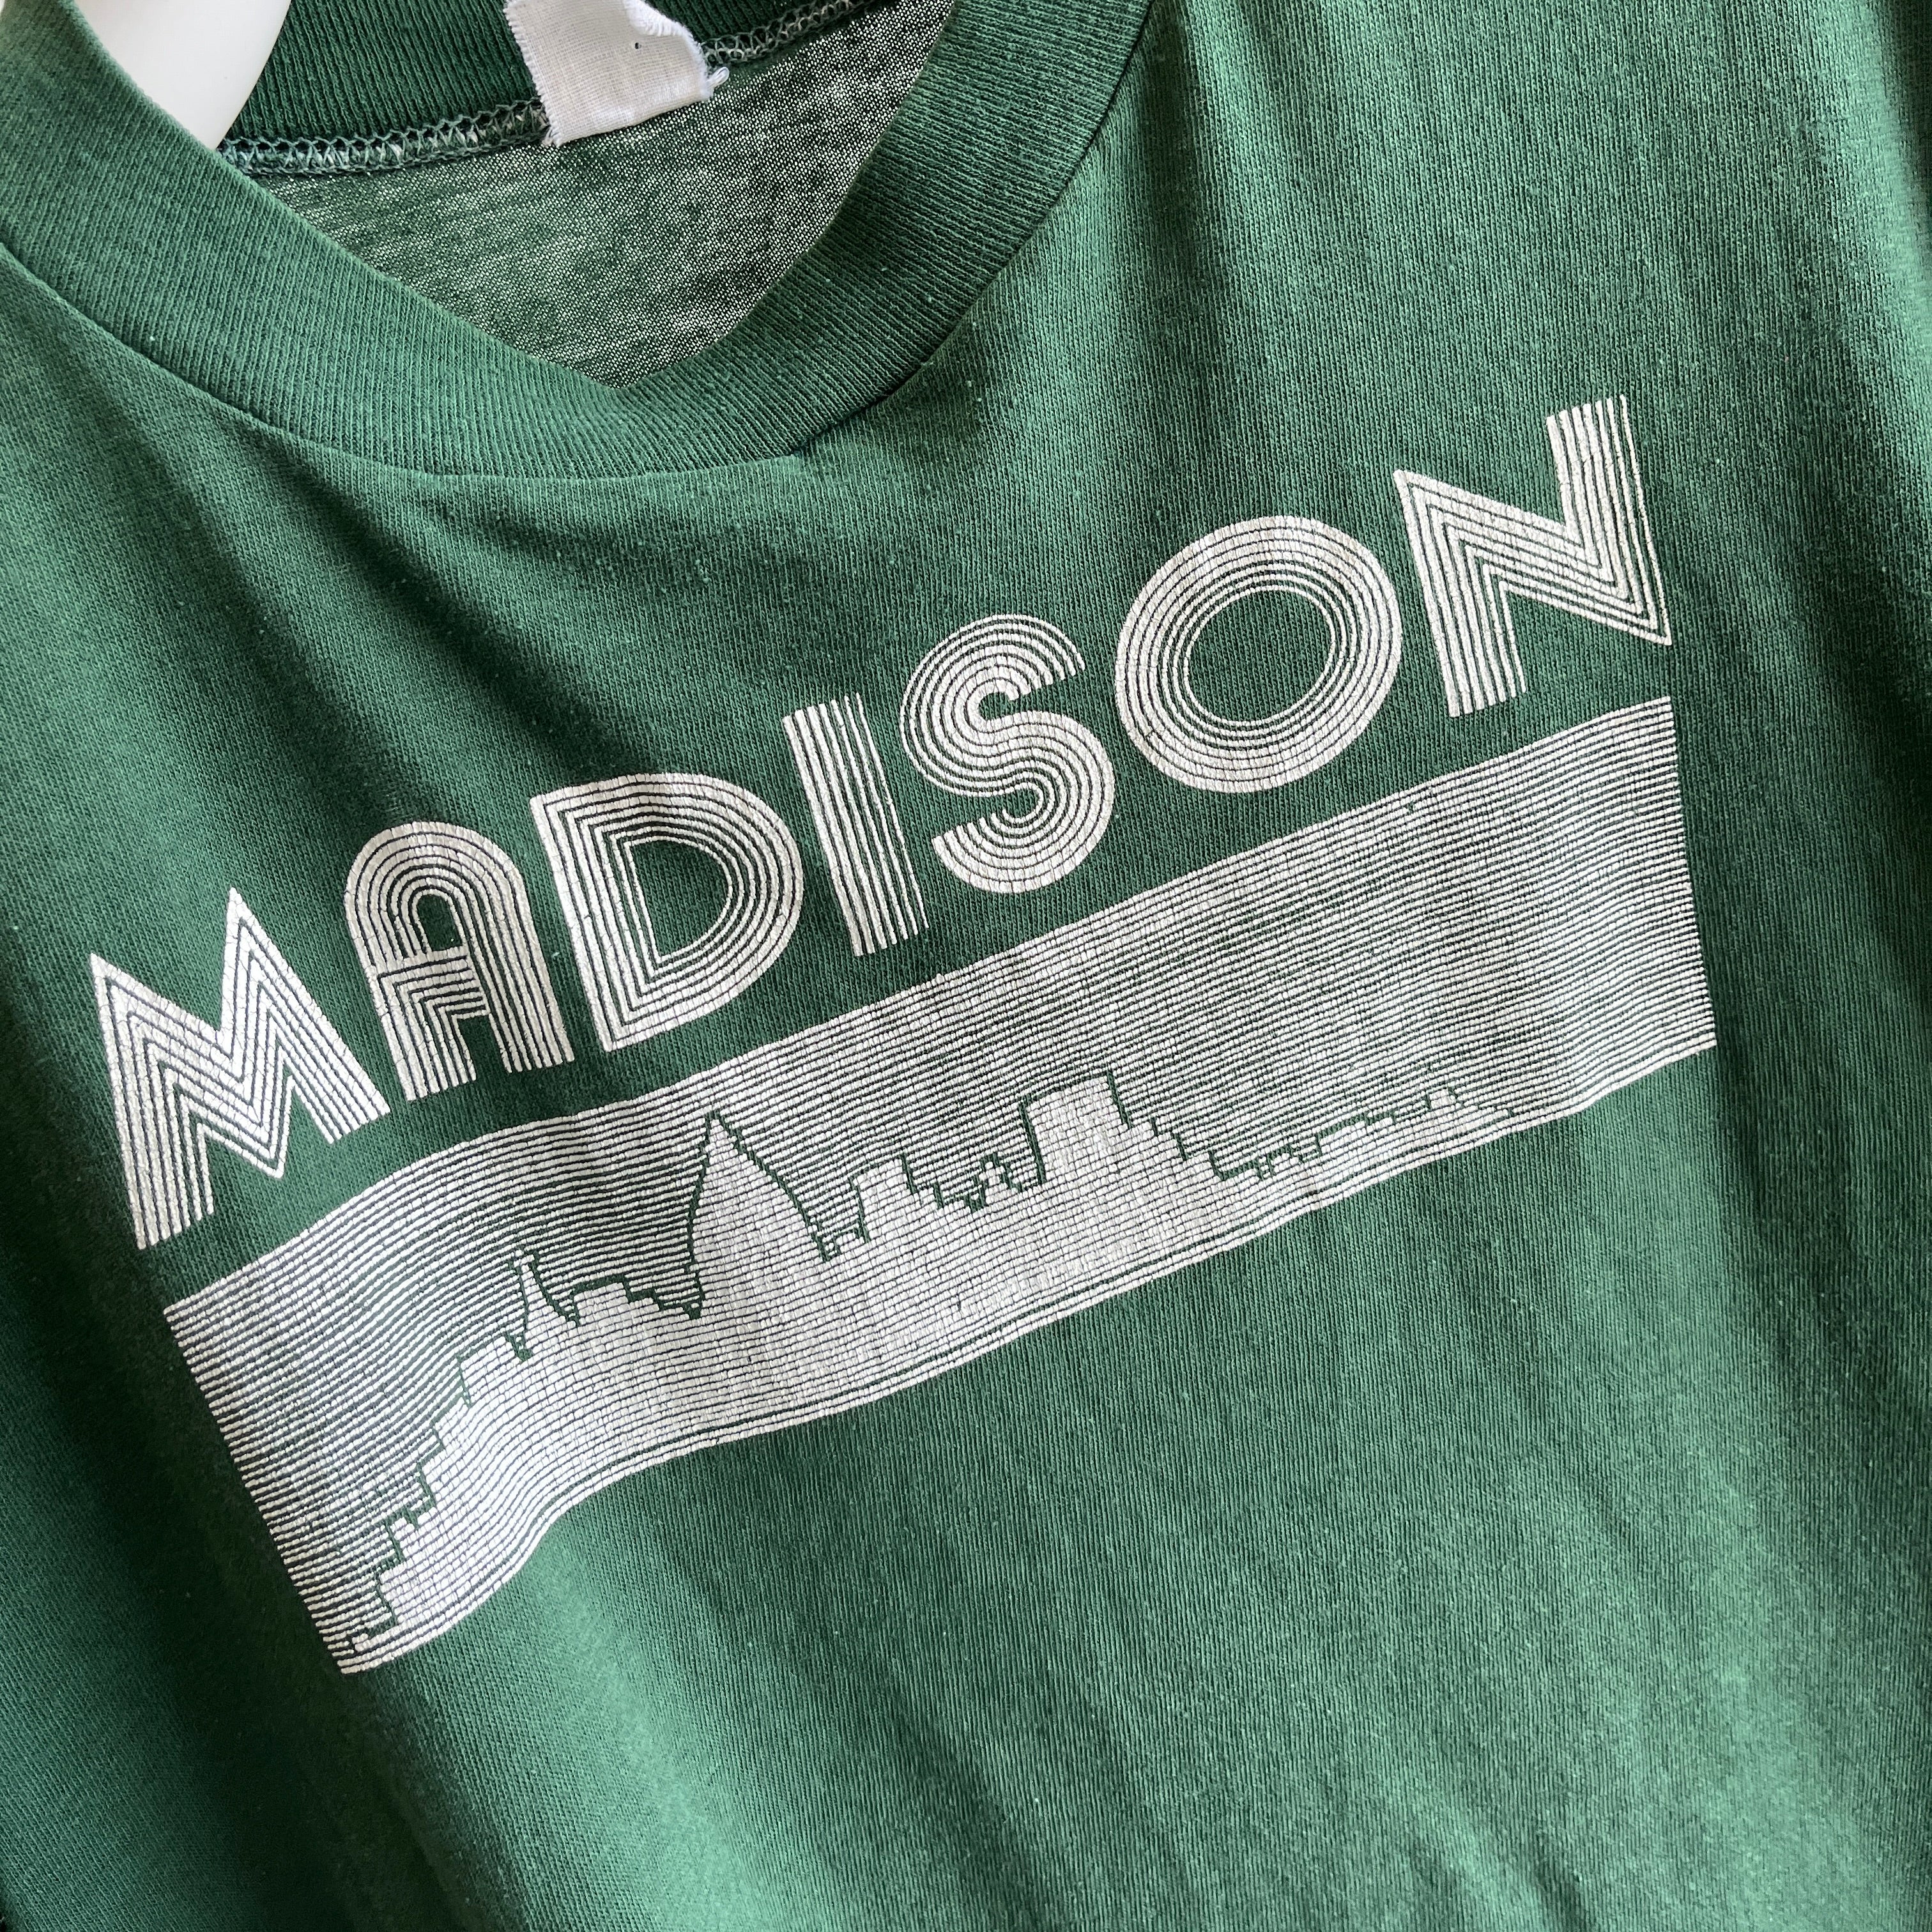 T-shirt Madison Tourist des années 1970 par Velva Sheen